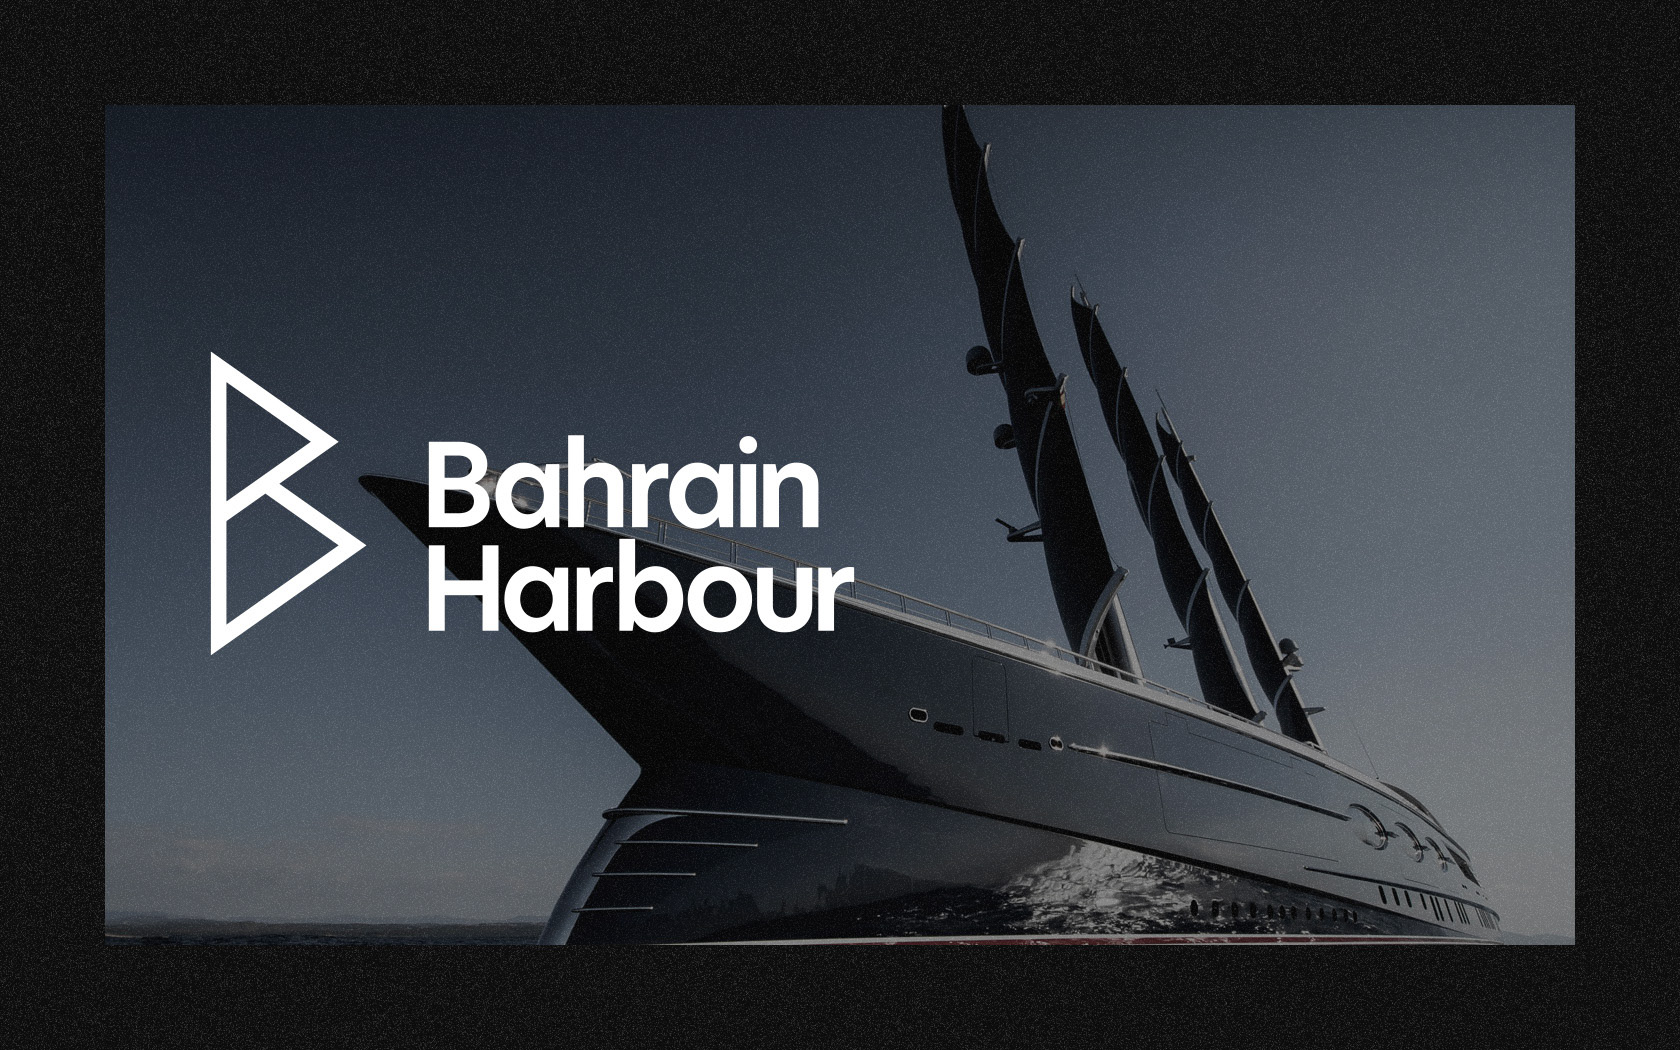 Bahrain Harbour brand logo in white